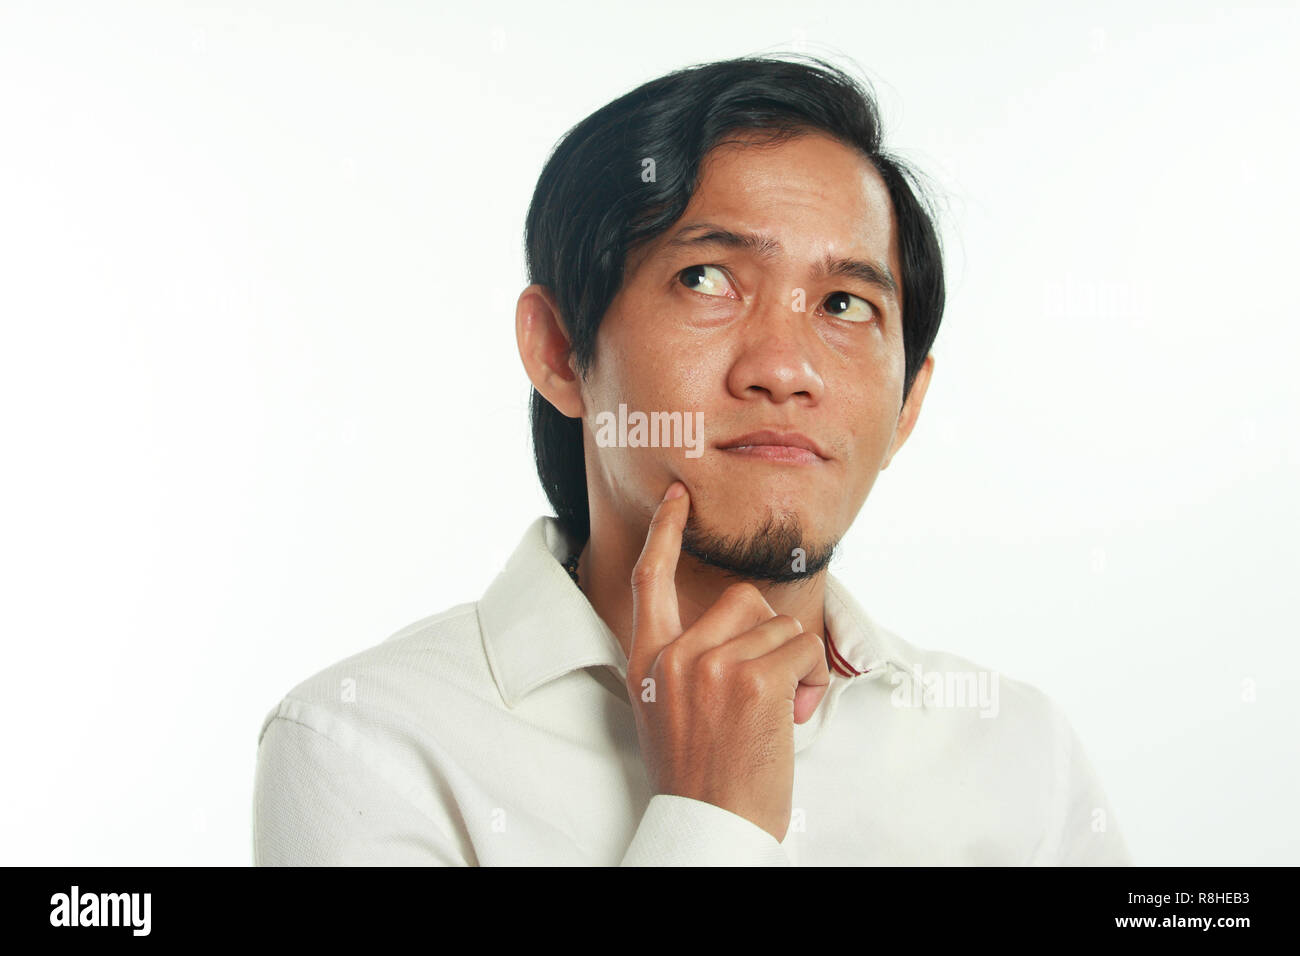 Foto immagine ritratto di un divertente giovane imprenditore asiatici seriamente pensando di qualcosa, close up ritratto su bianco Foto Stock